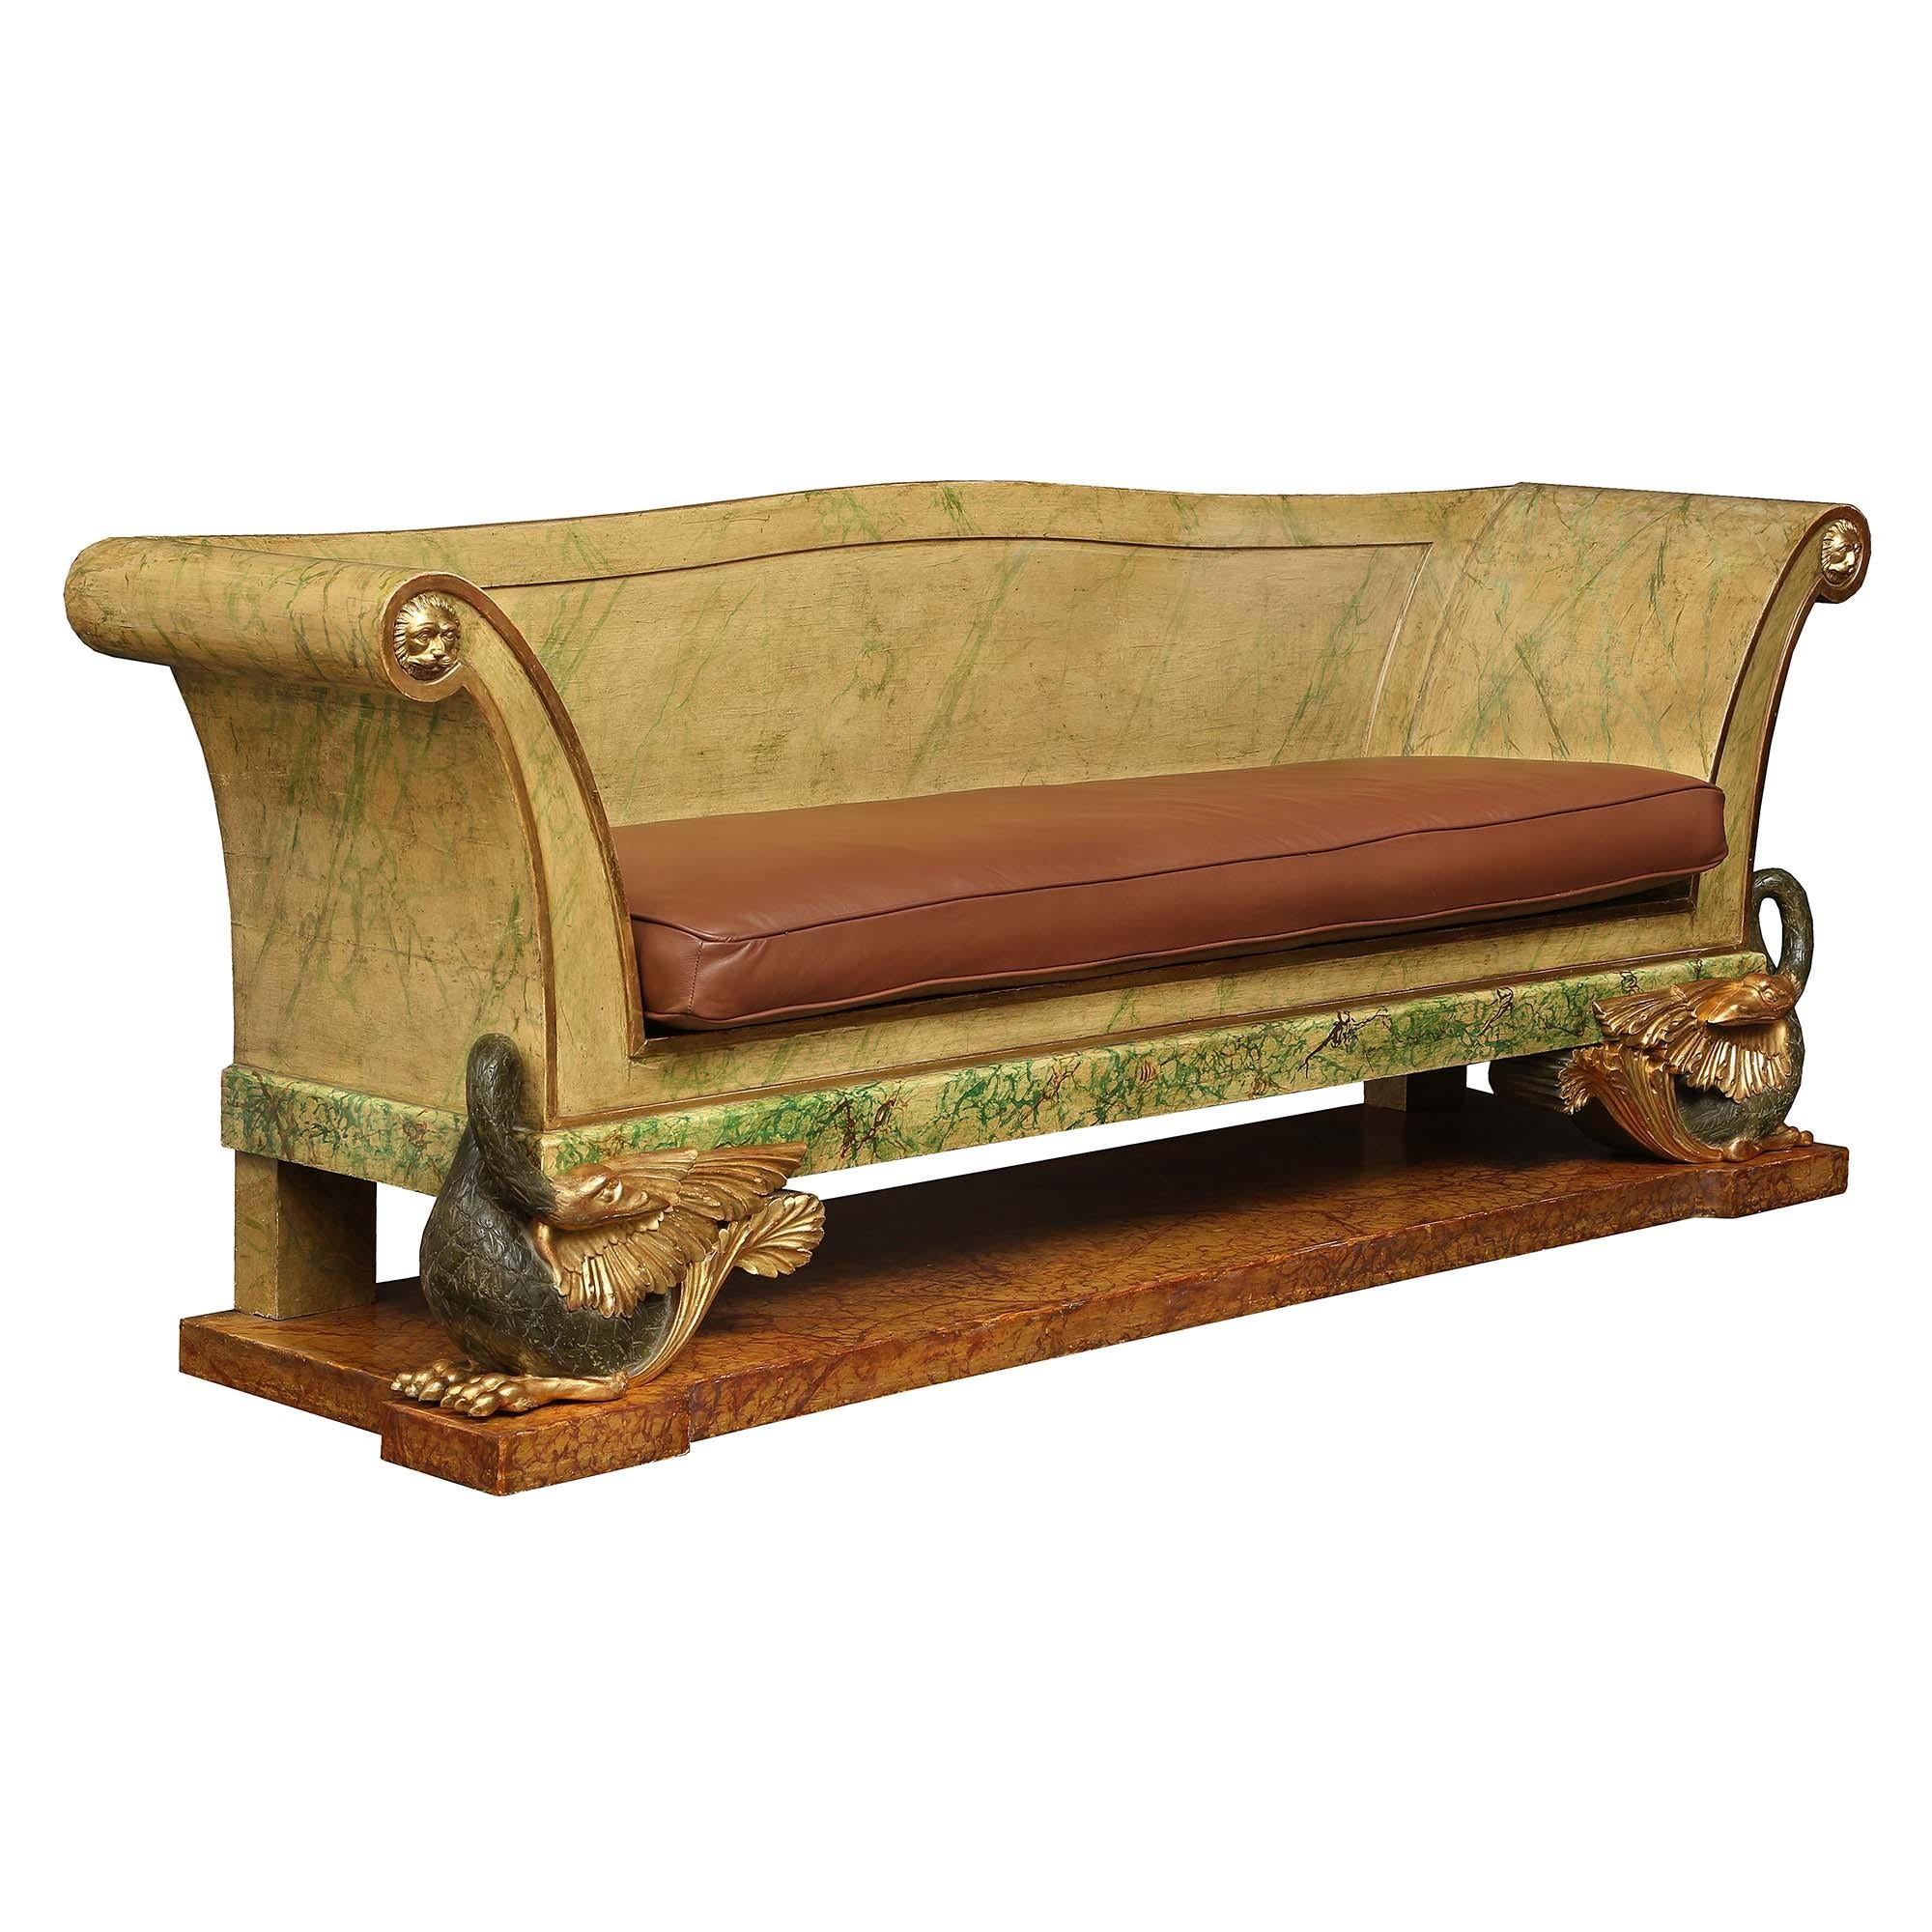 Ein atemberaubendes und einzigartiges italienisches neoklassizistisches Sofa aus dem frühen 19. Das Sofa mit Originallackierung und Marmorimitation steht auf einem massiven rechteckigen Sockel. Mit quadratischen Stützen auf der Rückseite und fein